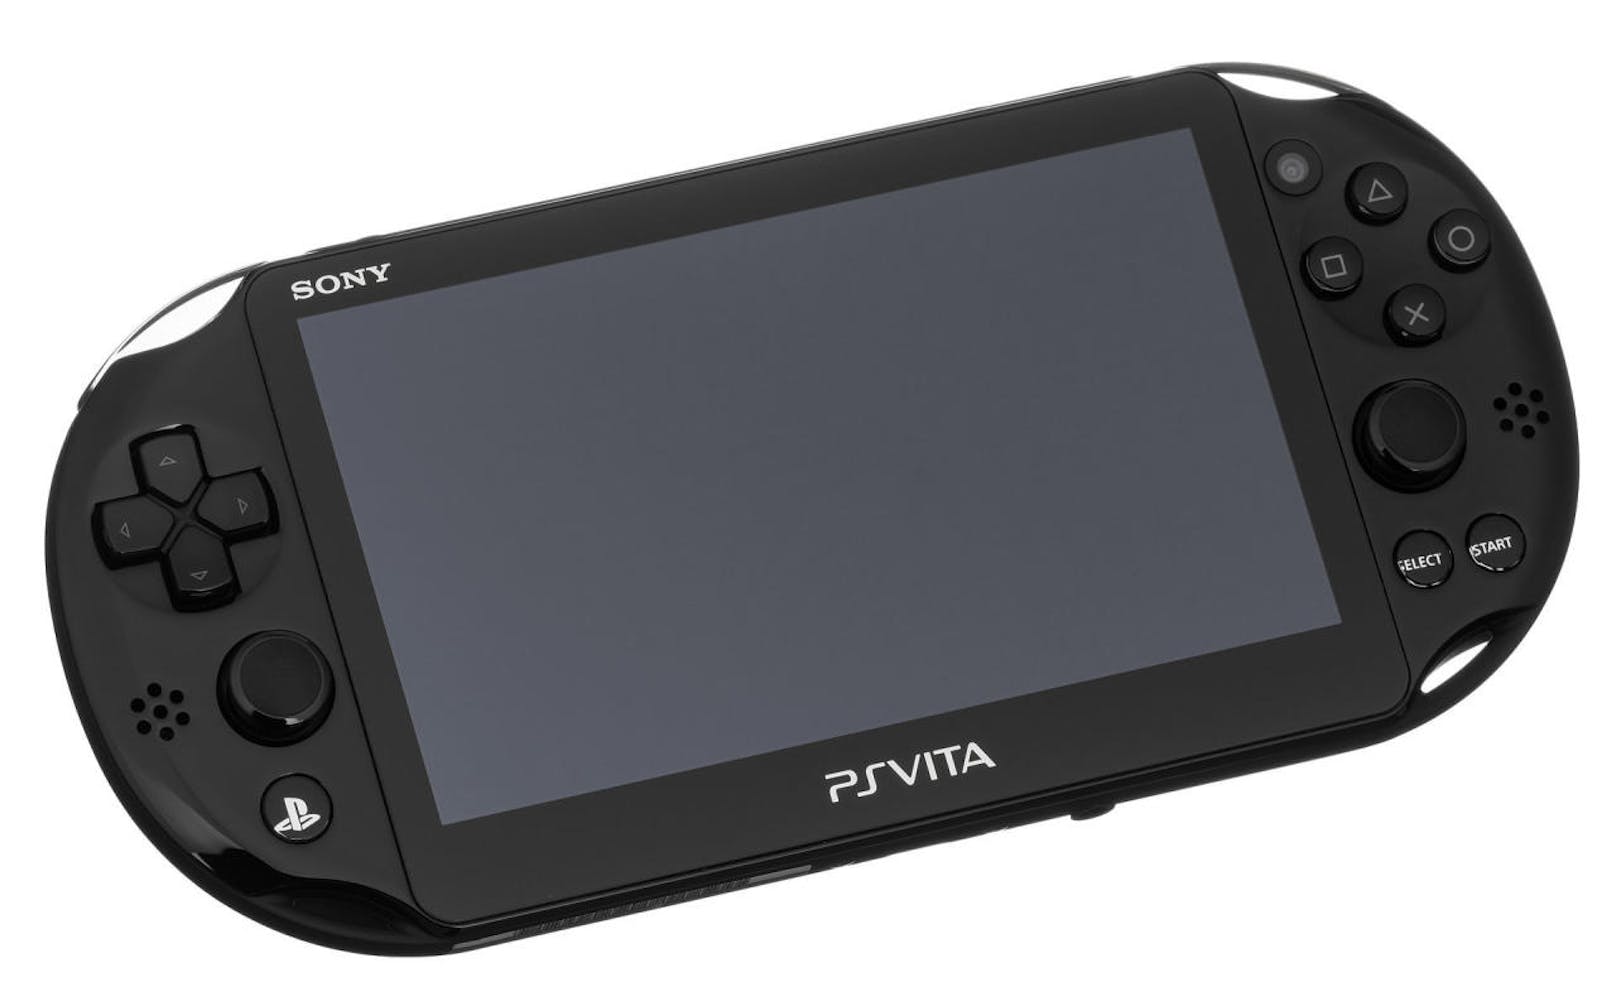 Die PlayStation Vita war die bis dahin technisch stärkste portable Konsole. Der Verkauf blieb aber unter den Erwartungen, die Titel-Auswahl vergleichsweise gering.